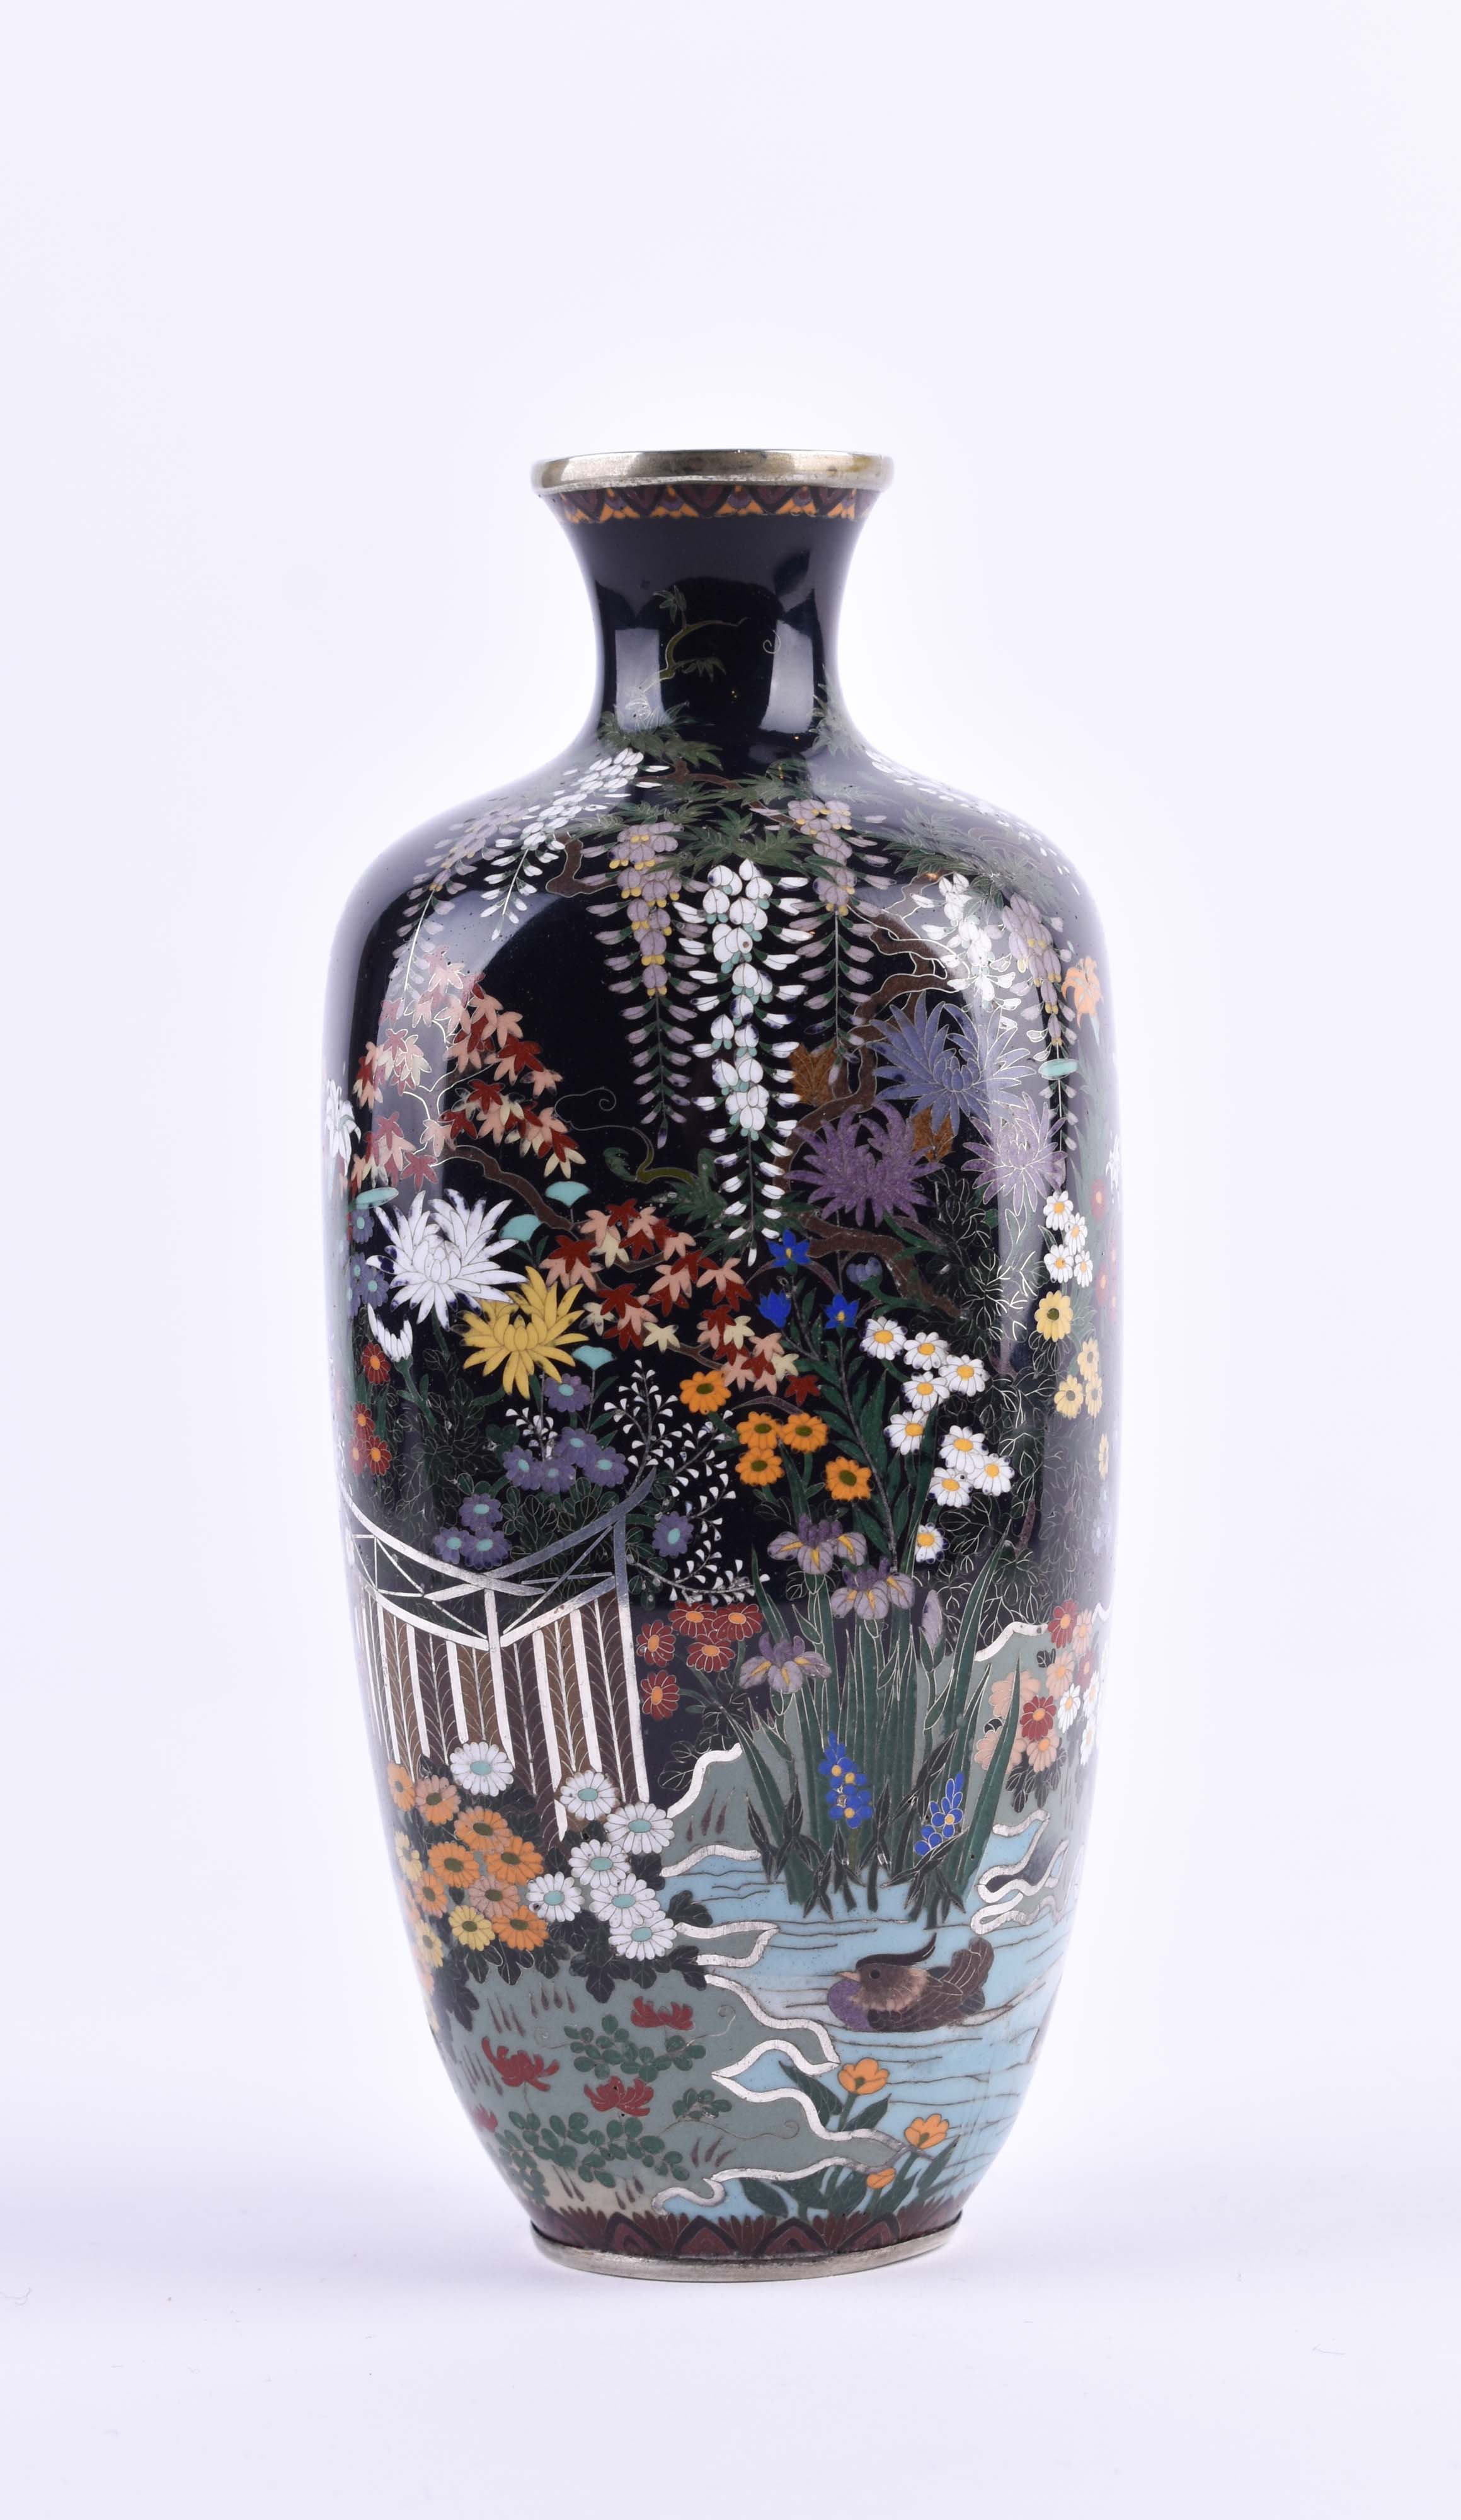  Cloisonne vase Japan Meiji period - Image 2 of 12